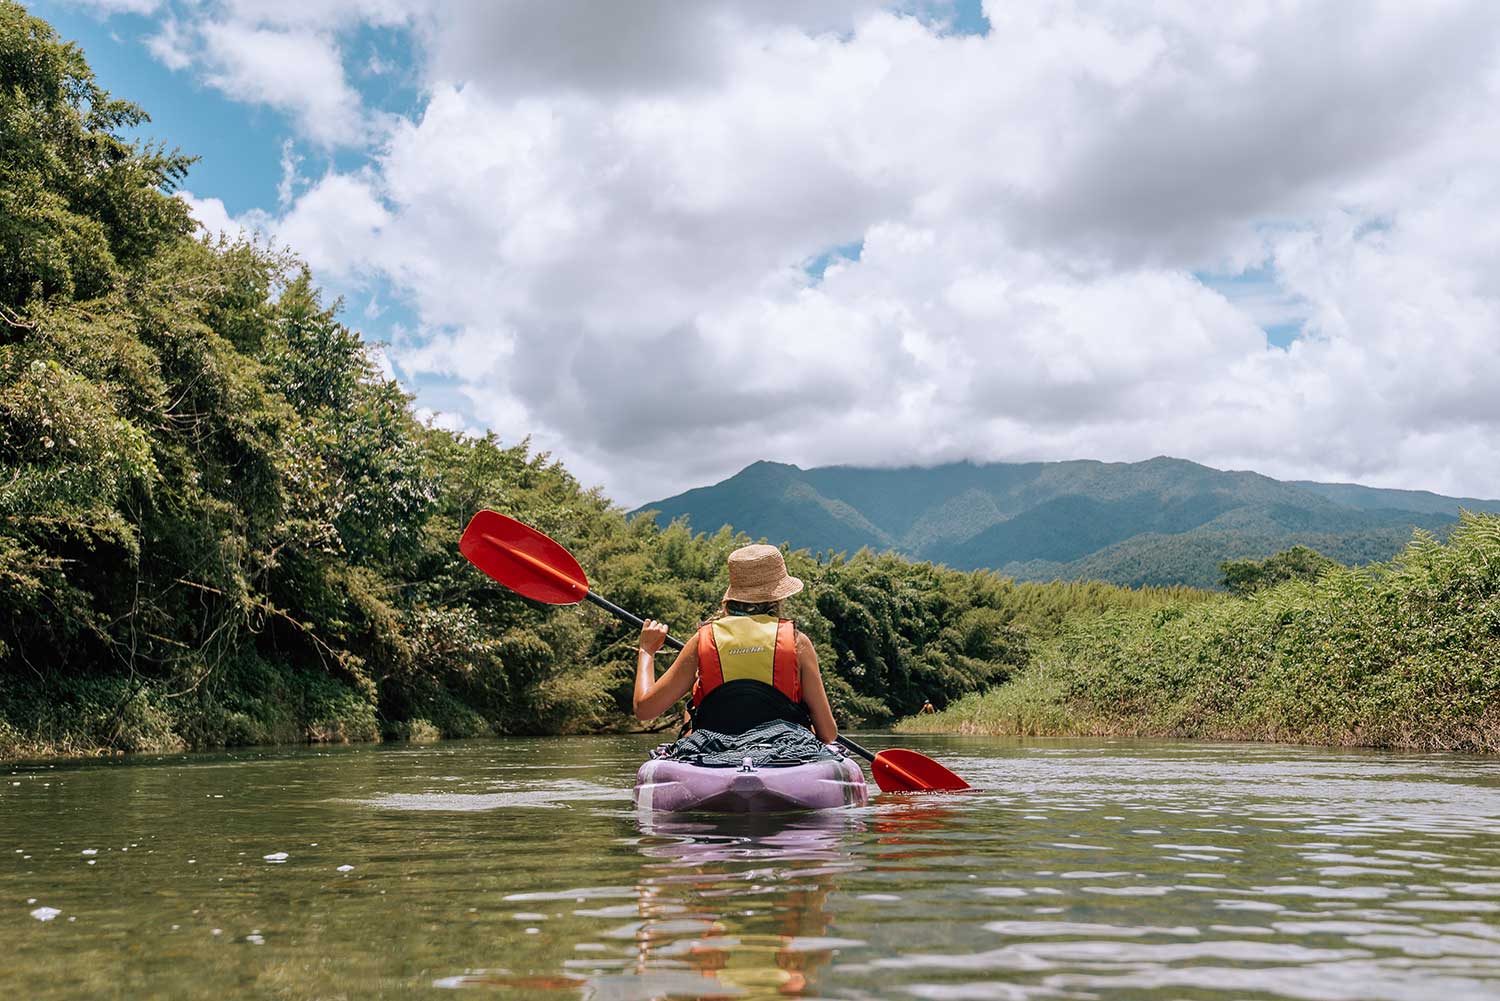 kayaking through rainforest on babinda kayaking